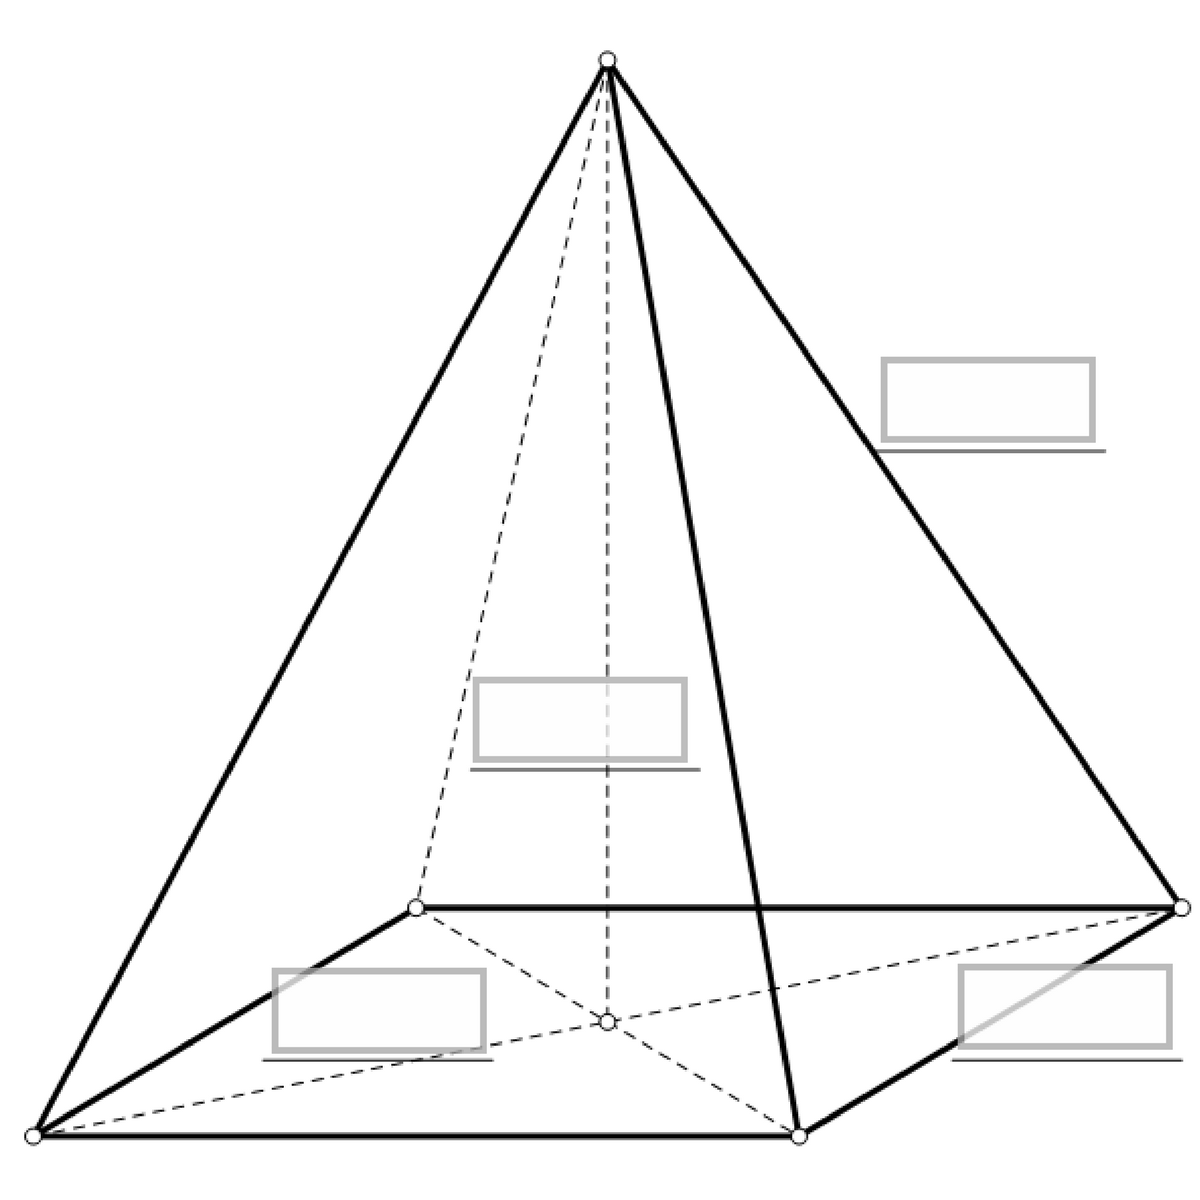 Na slici je pravilna četverostrana piramida s istaknutom visinom piramide